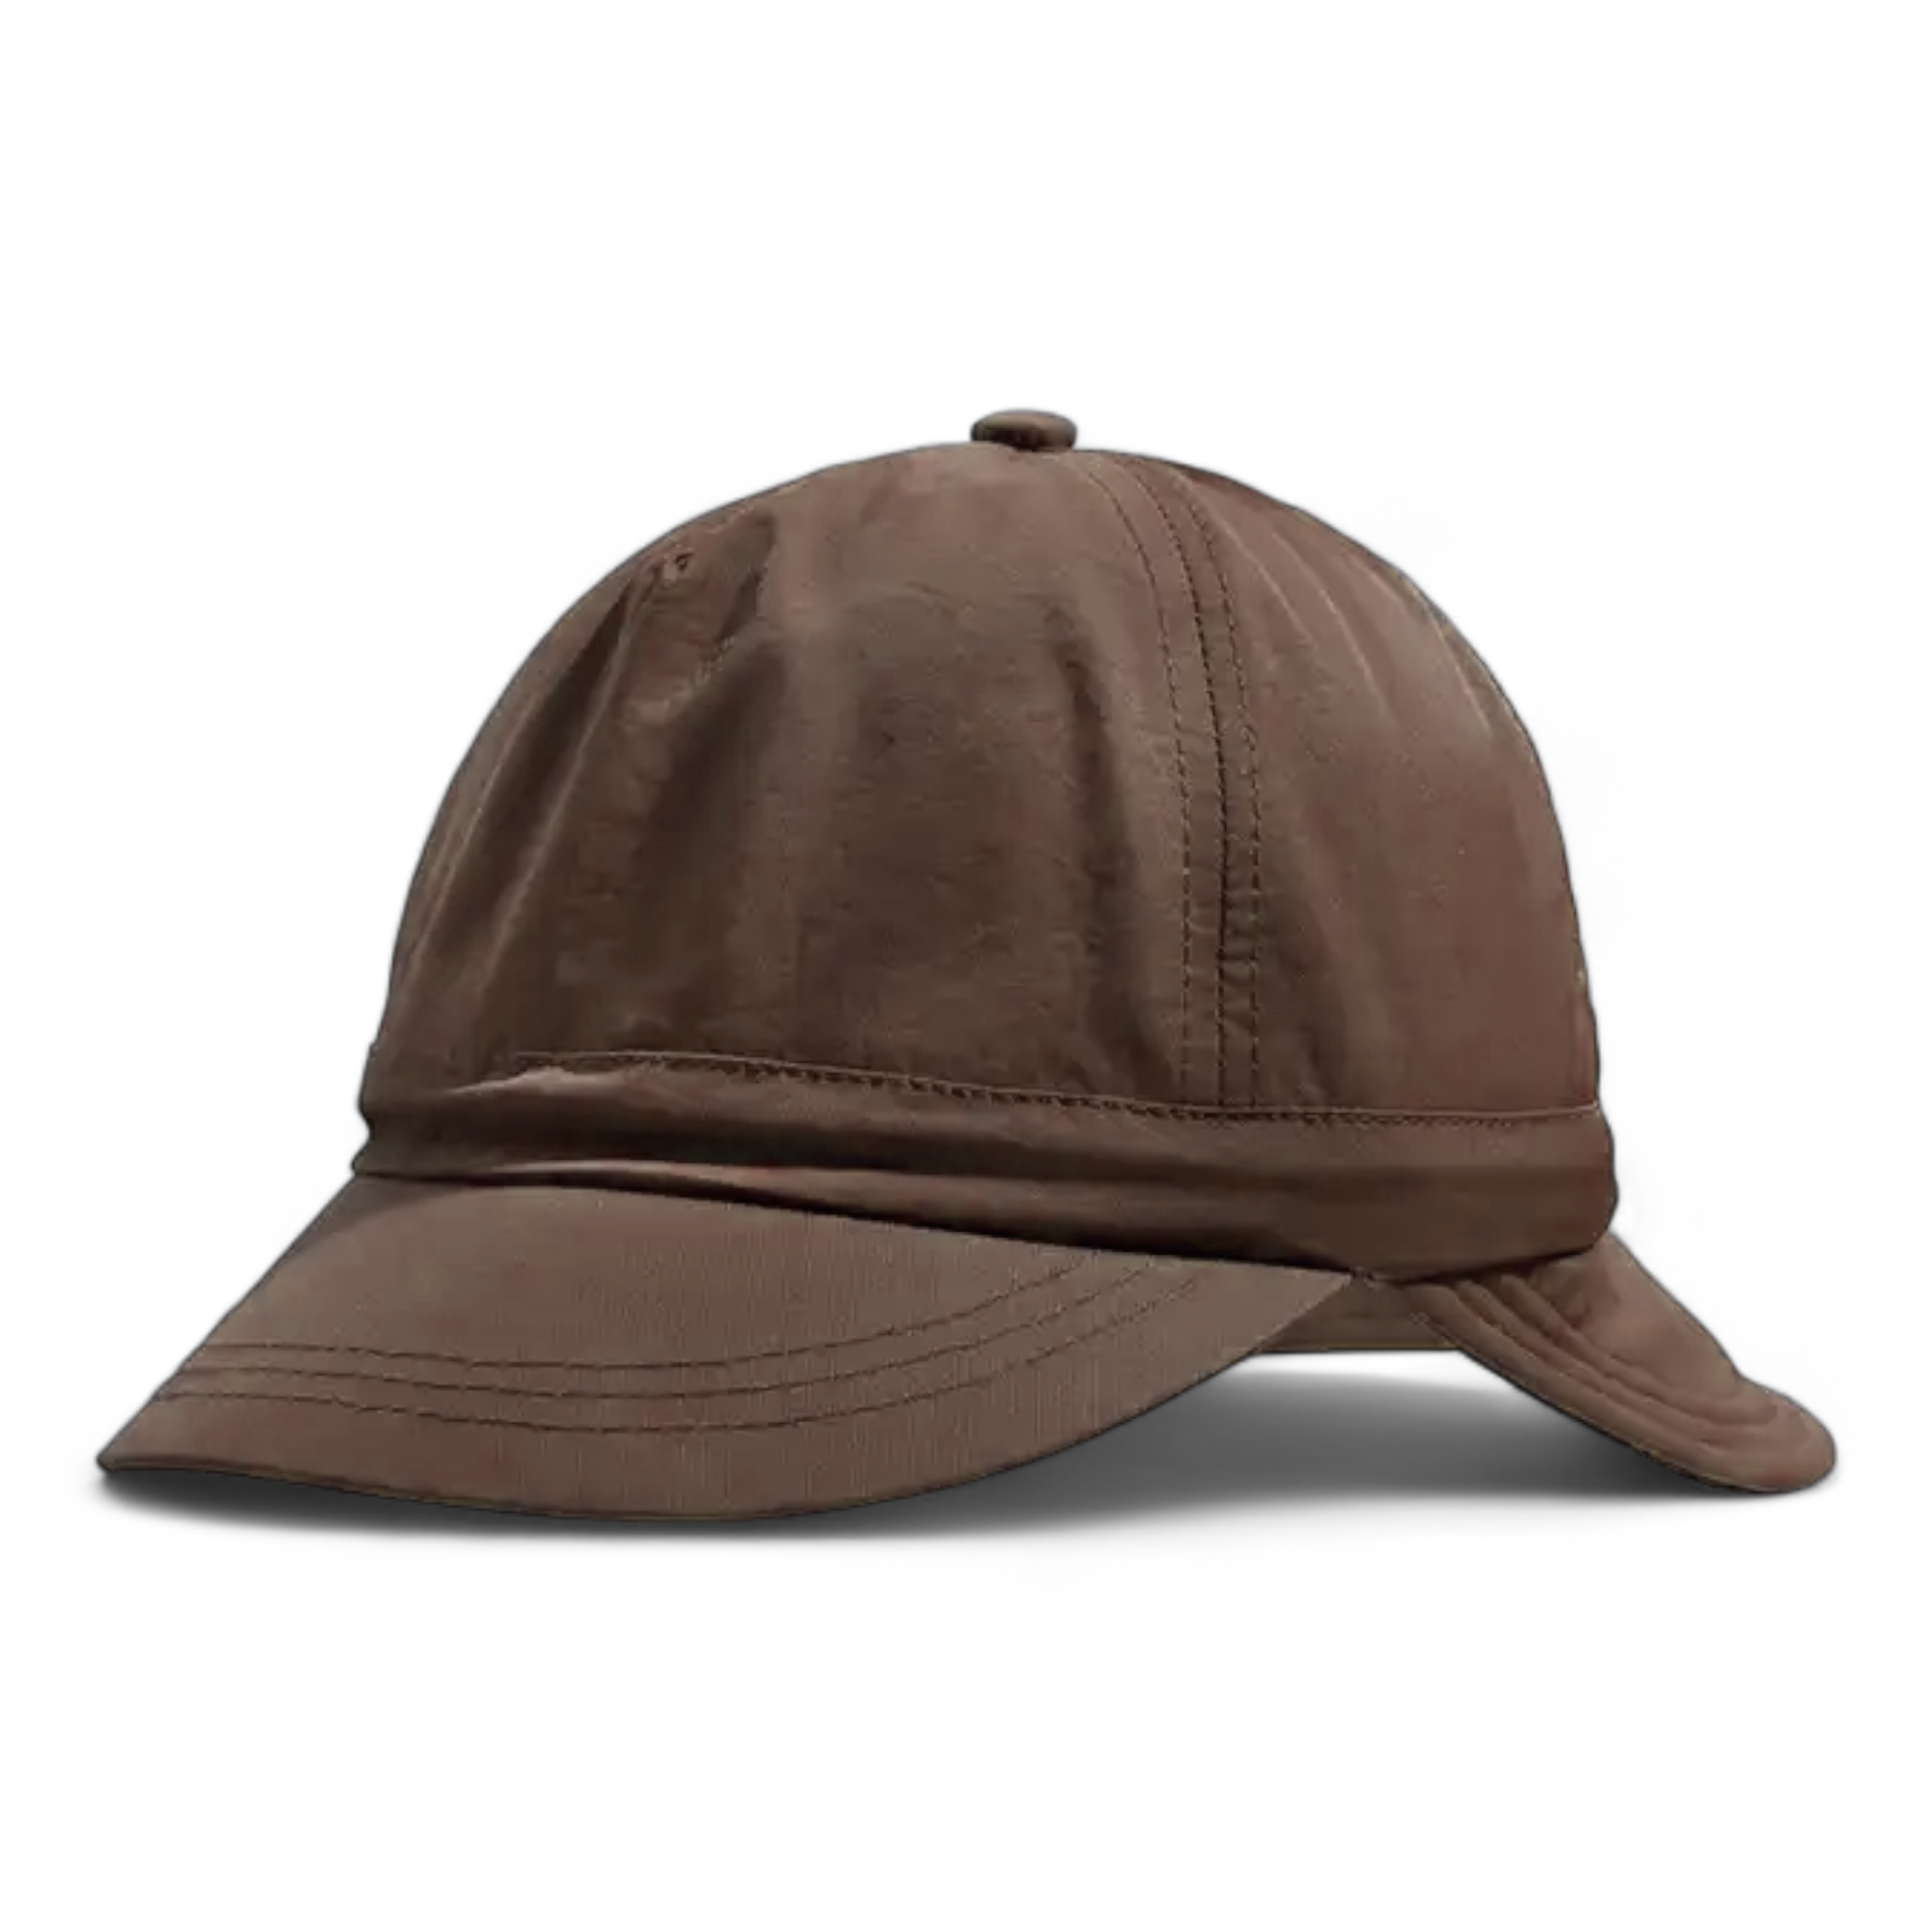 Chokore Double Brim Baseball Cap (Brown)